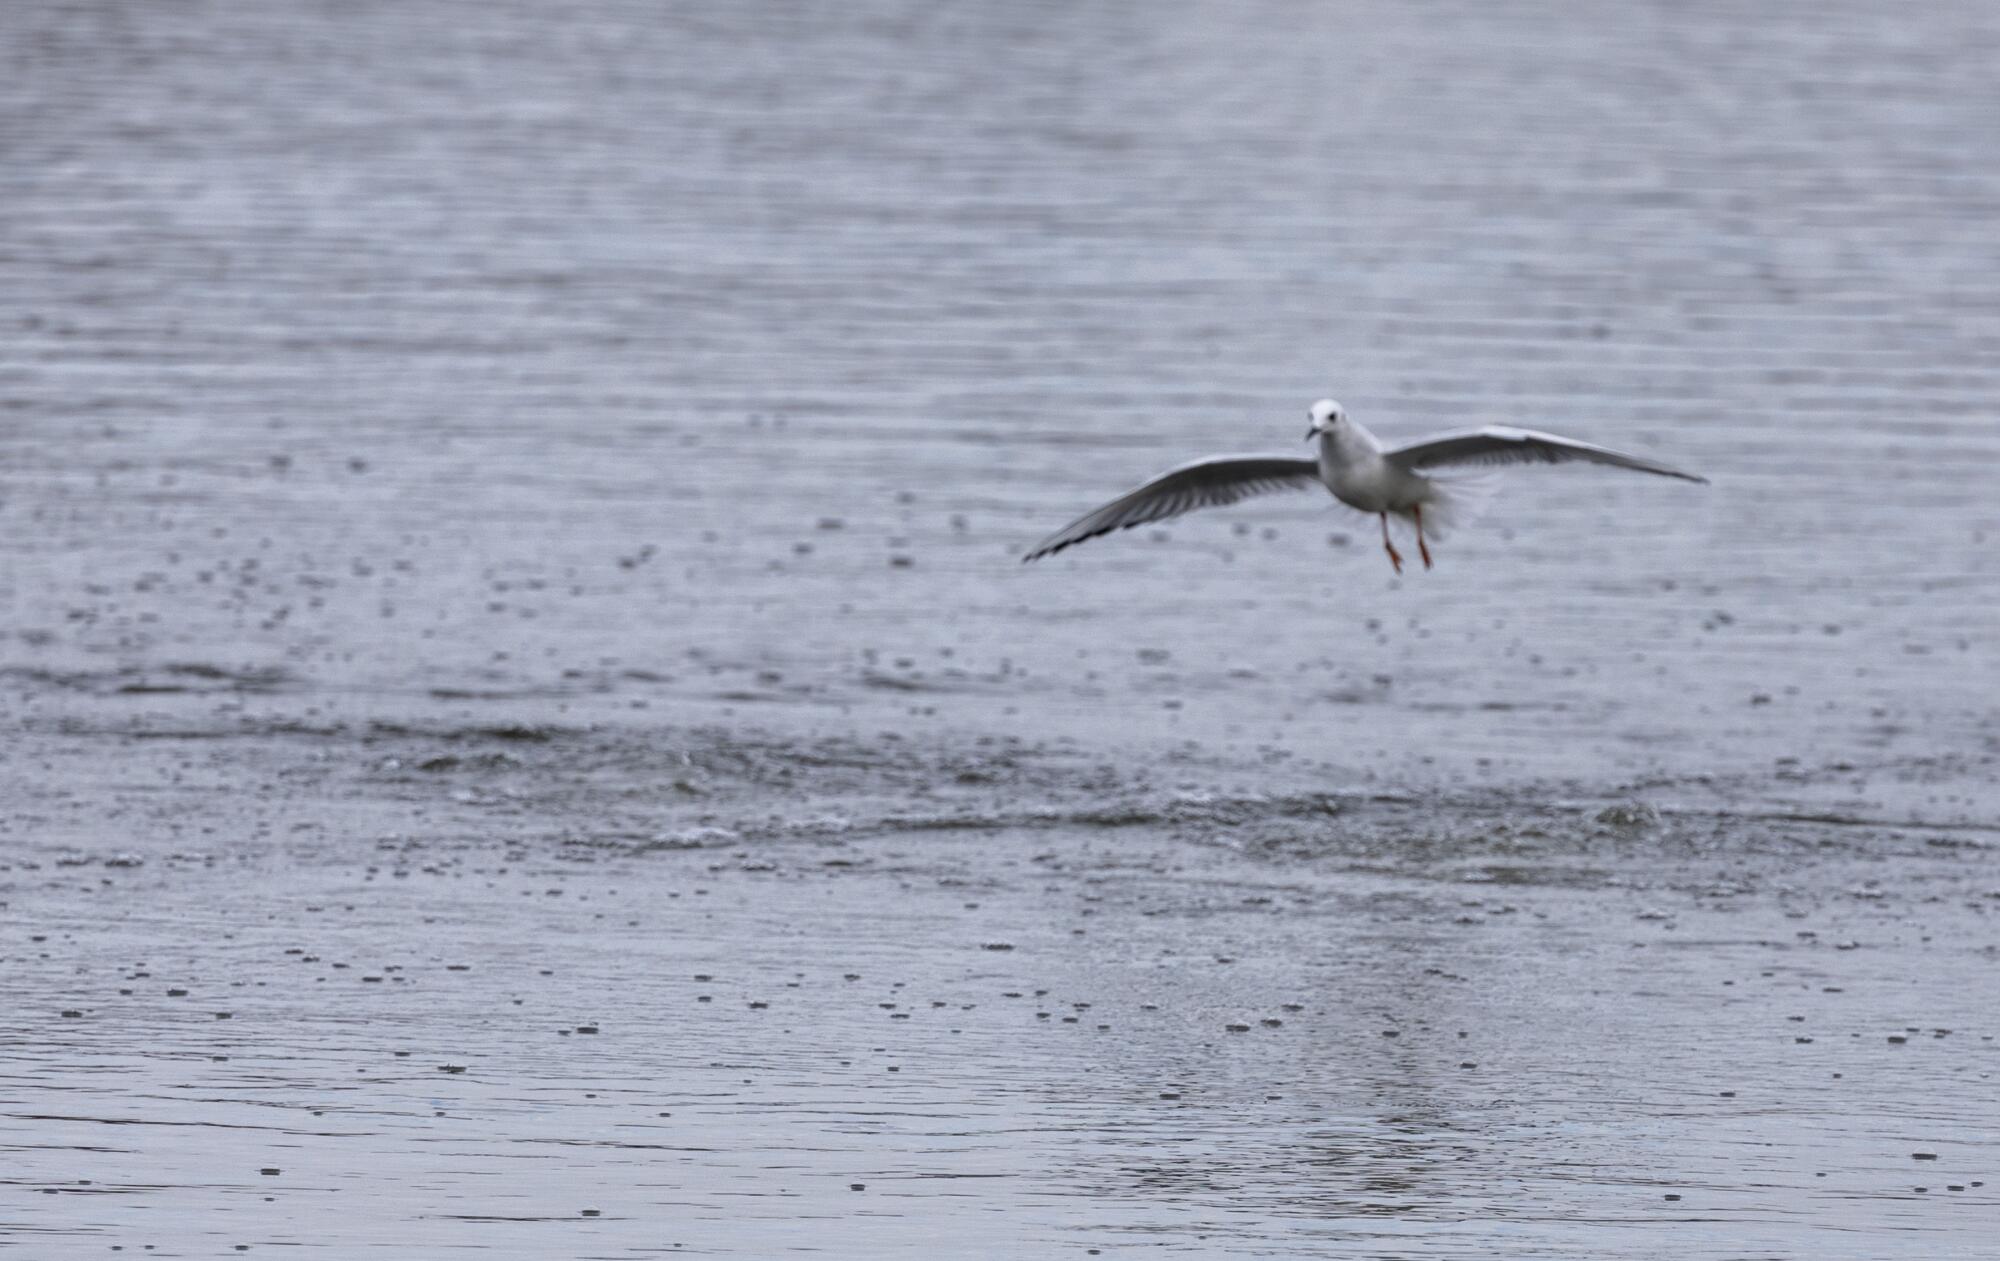 A gull flies above a lake.